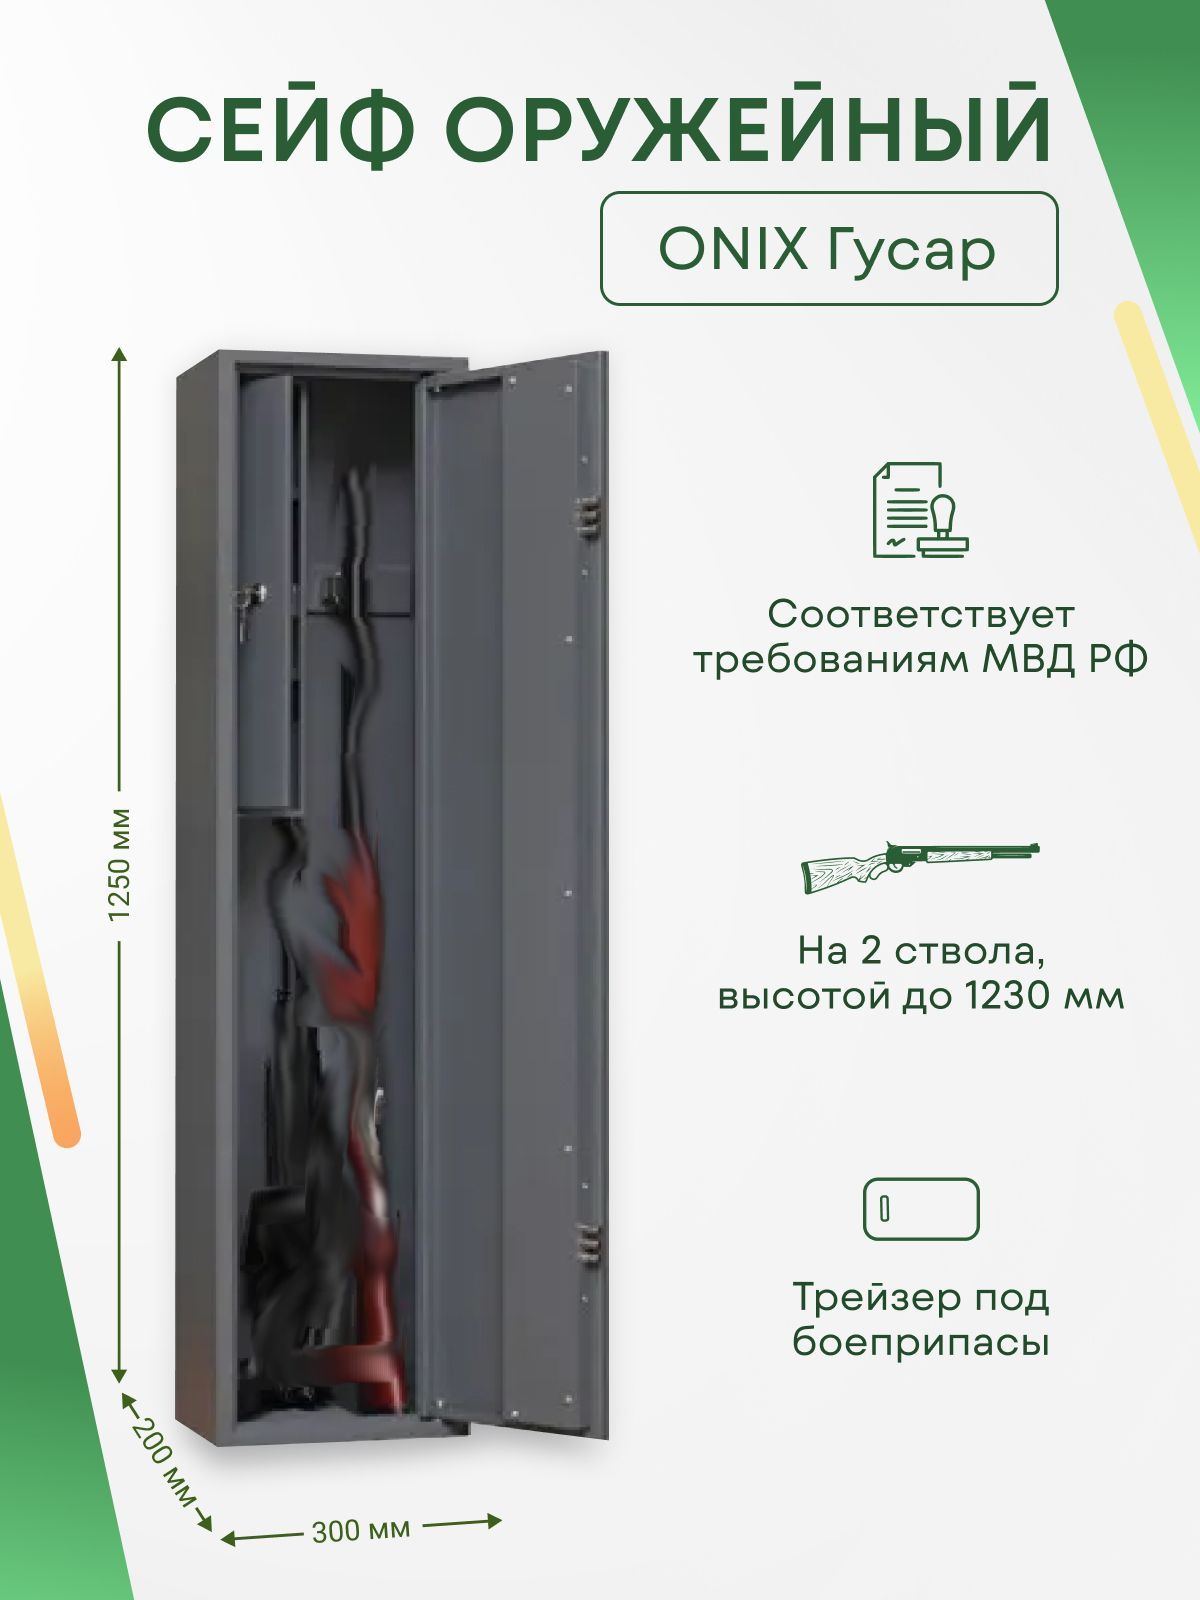 Оружейный шкаф onix канонир mes